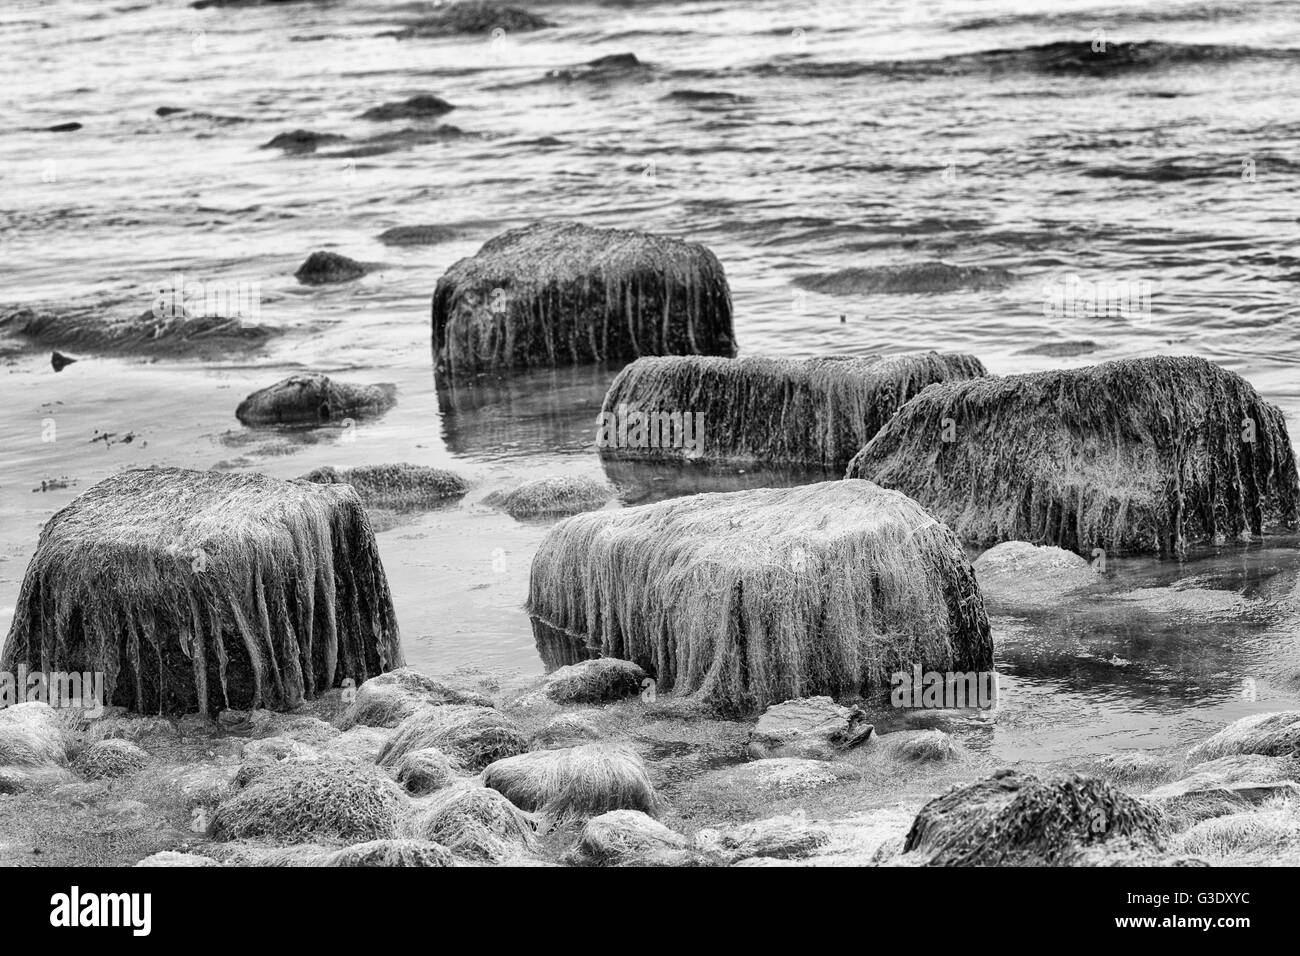 Des roches couvertes d'algues vertes, noir et blanc Banque D'Images